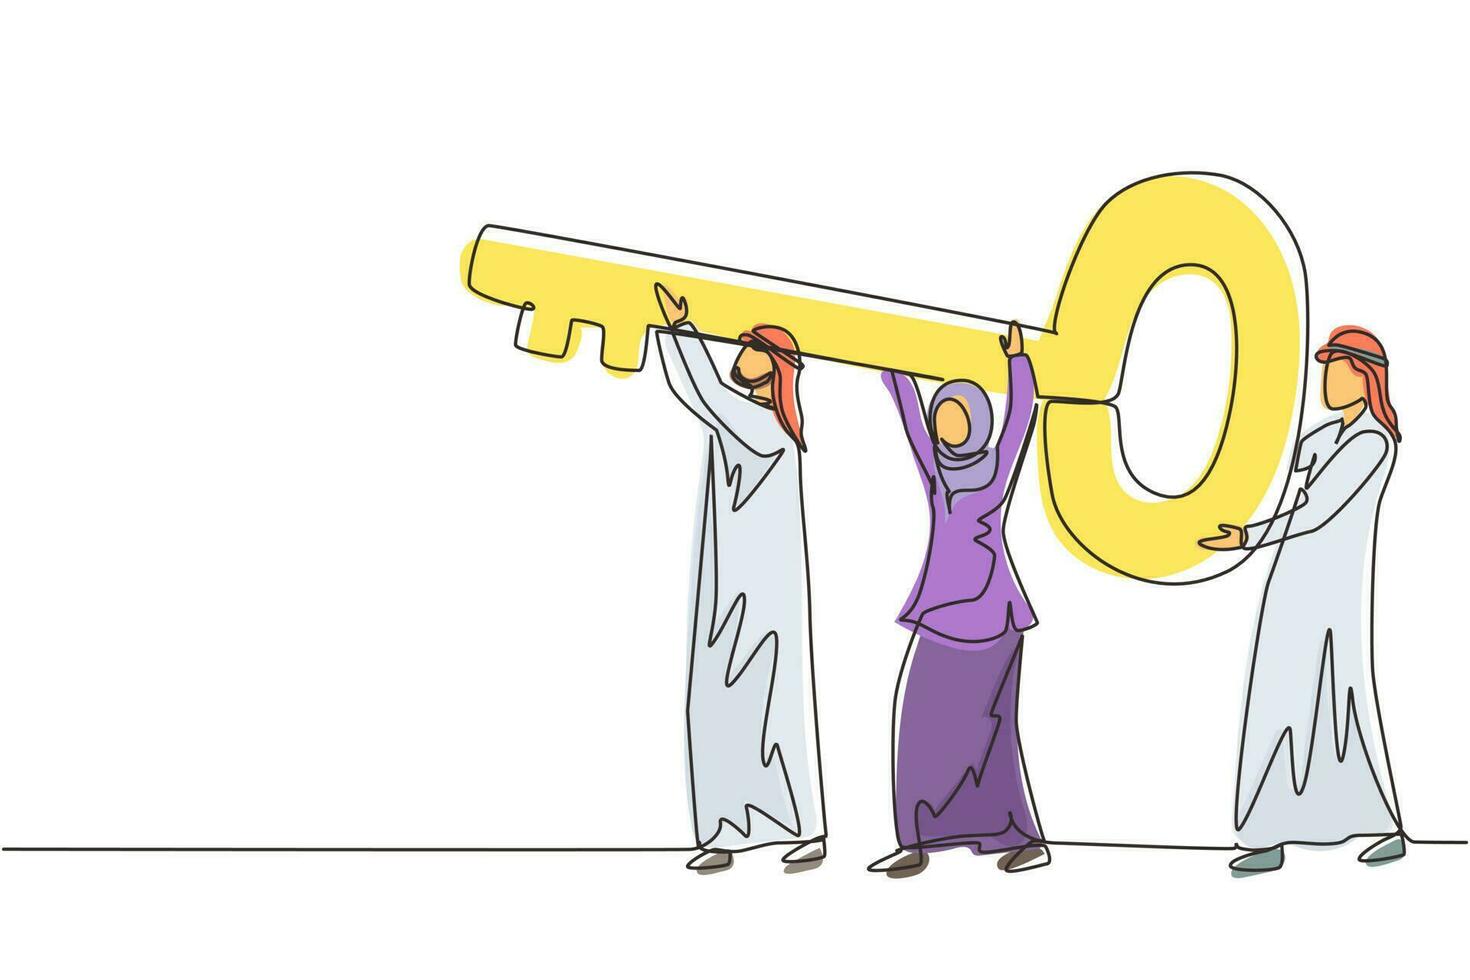 equipo de negocios árabe de dibujo de una sola línea sosteniendo y llevando una llave grande para desbloquear la cerradura. trabajo en equipo cooperativo, concepto de negocio colaborativo. ilustración de vector de diseño de dibujo de línea continua